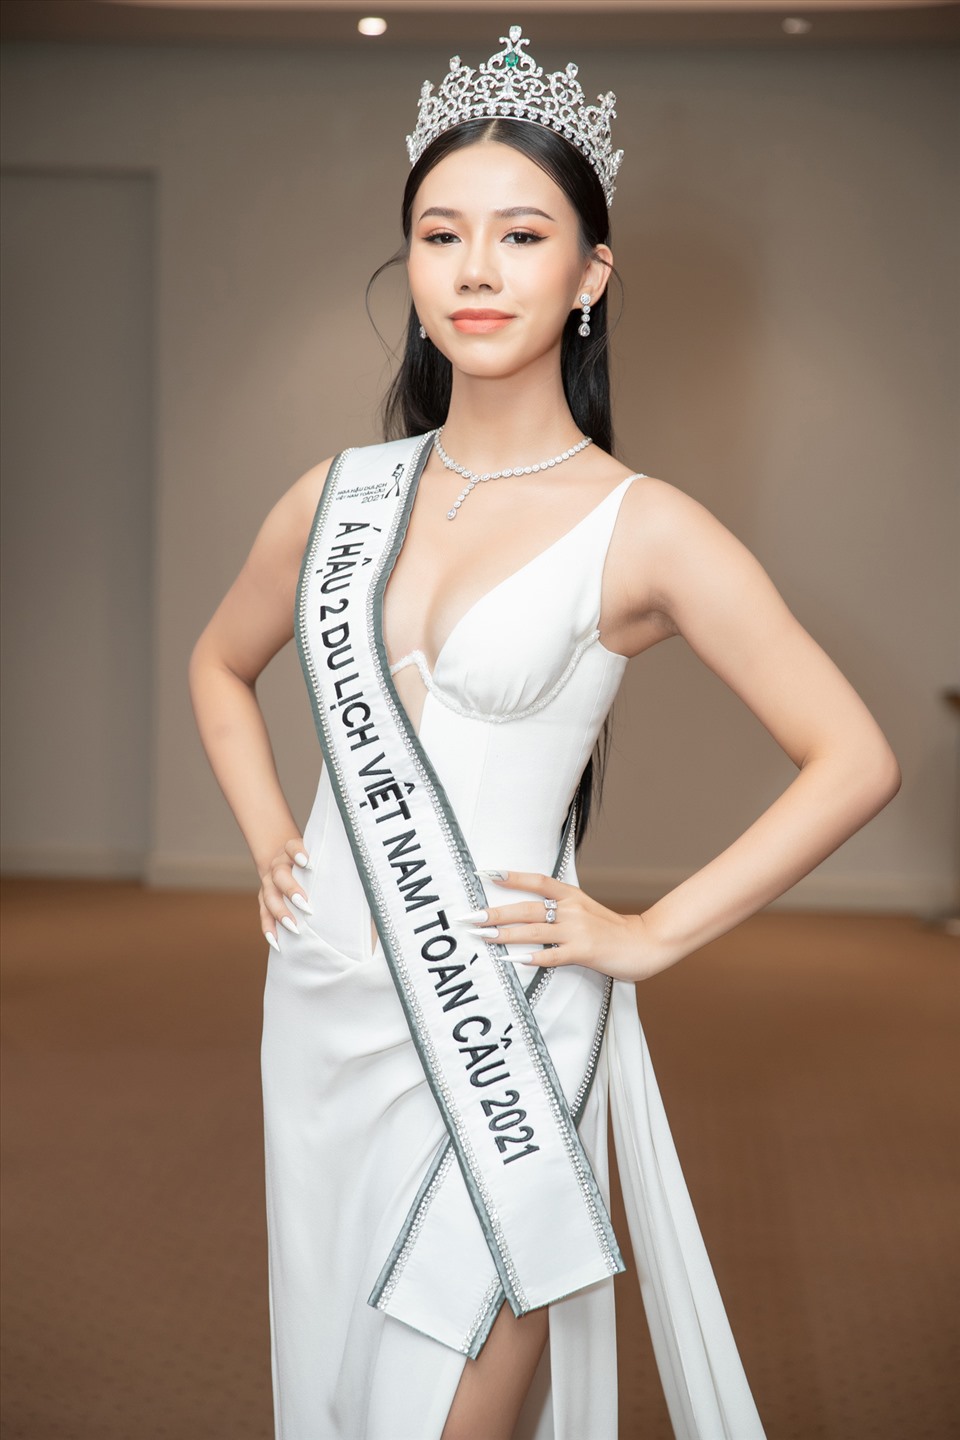 Trong khi đó, thí sinh Trần Thu Hà vỡ oà khi được gọi tên vào Top 3. Cô khẳng định bản thân sẽ làm được nhiều hơn để chứng minh việc mình giành Á hậu 2 Hoa hậu Du lịch Việt Nam Toàn cầu 2021 là hoàn toàn xứng đáng.